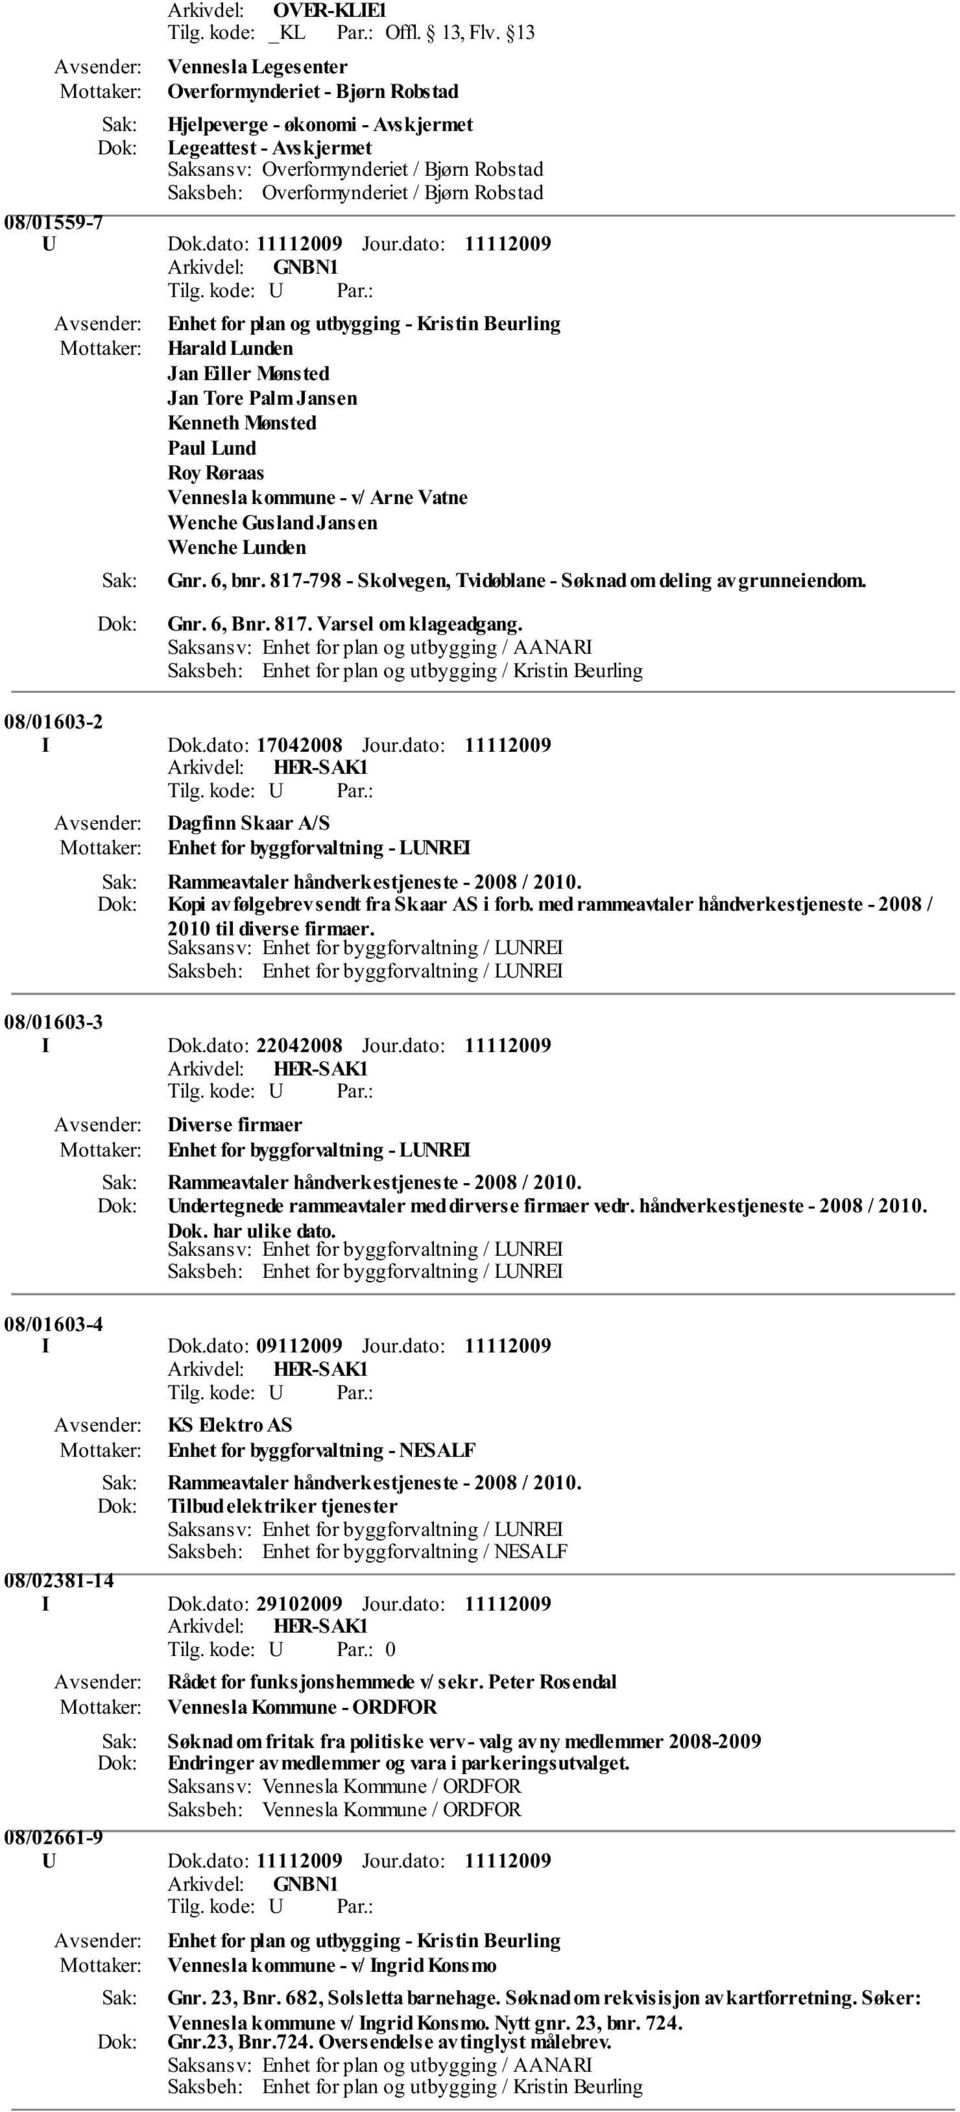 Wenche Lunden Gnr. 6, bnr. 817-798 - Skolvegen, Tvidøblane - Søknad om deling av grunneiendom. Gnr. 6, Bnr. 817. Varsel om klageadgang. 08/01603-2 I Dok.dato: 17042008 Jour.